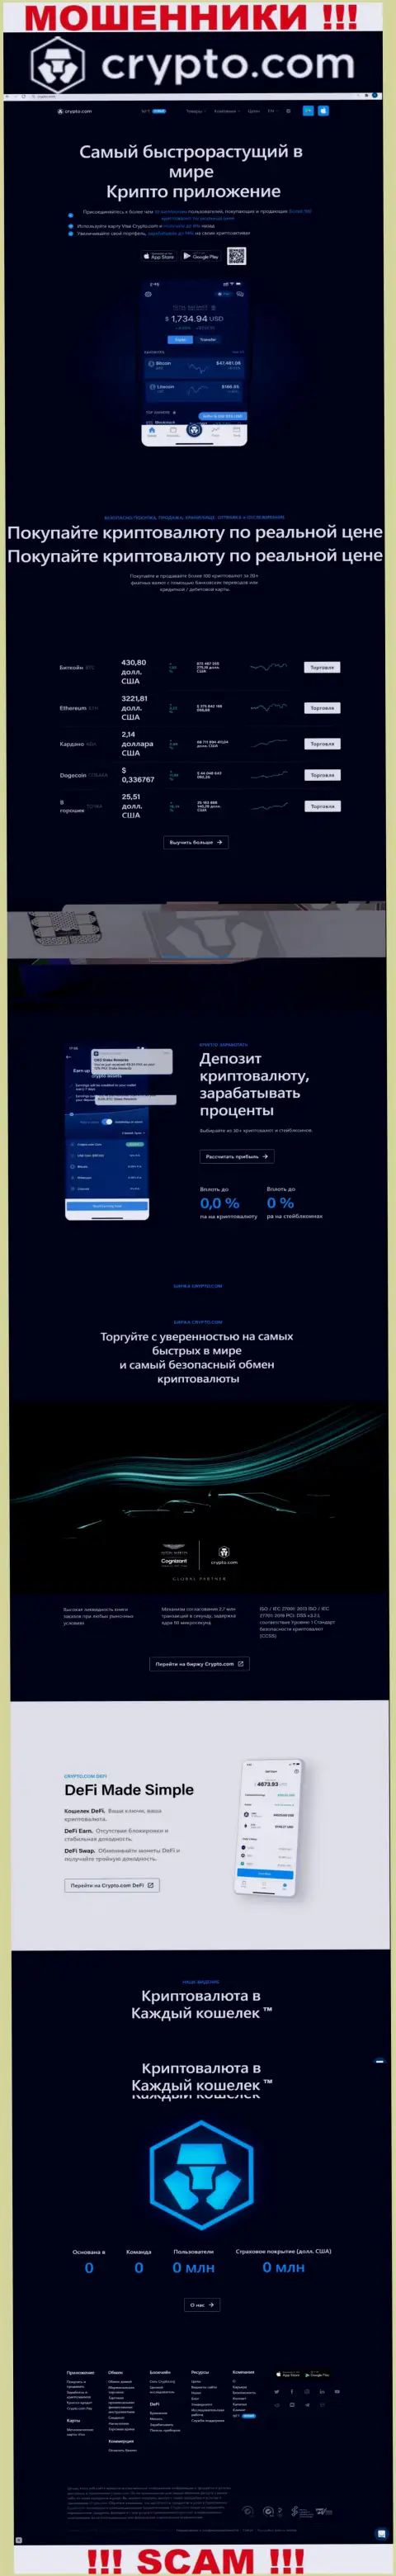 Официальный портал мошенников Крипто Ком, переполненный сведениями для наивных людей